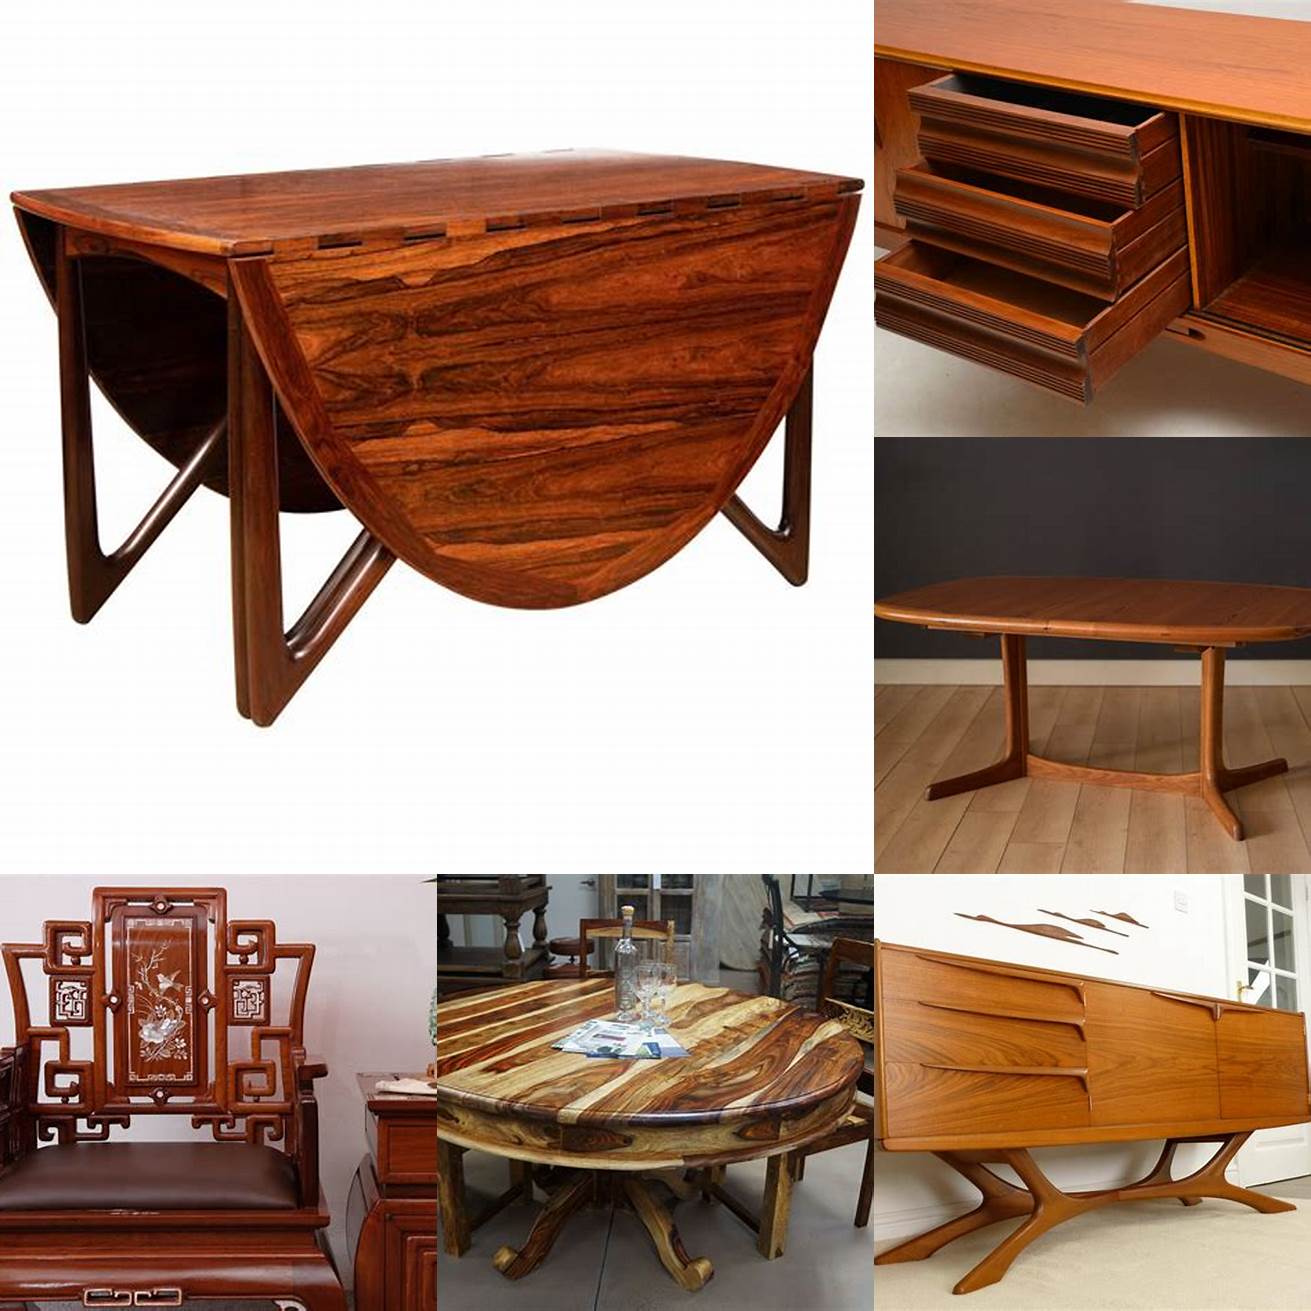 Rosewood furniture vs teak furniture